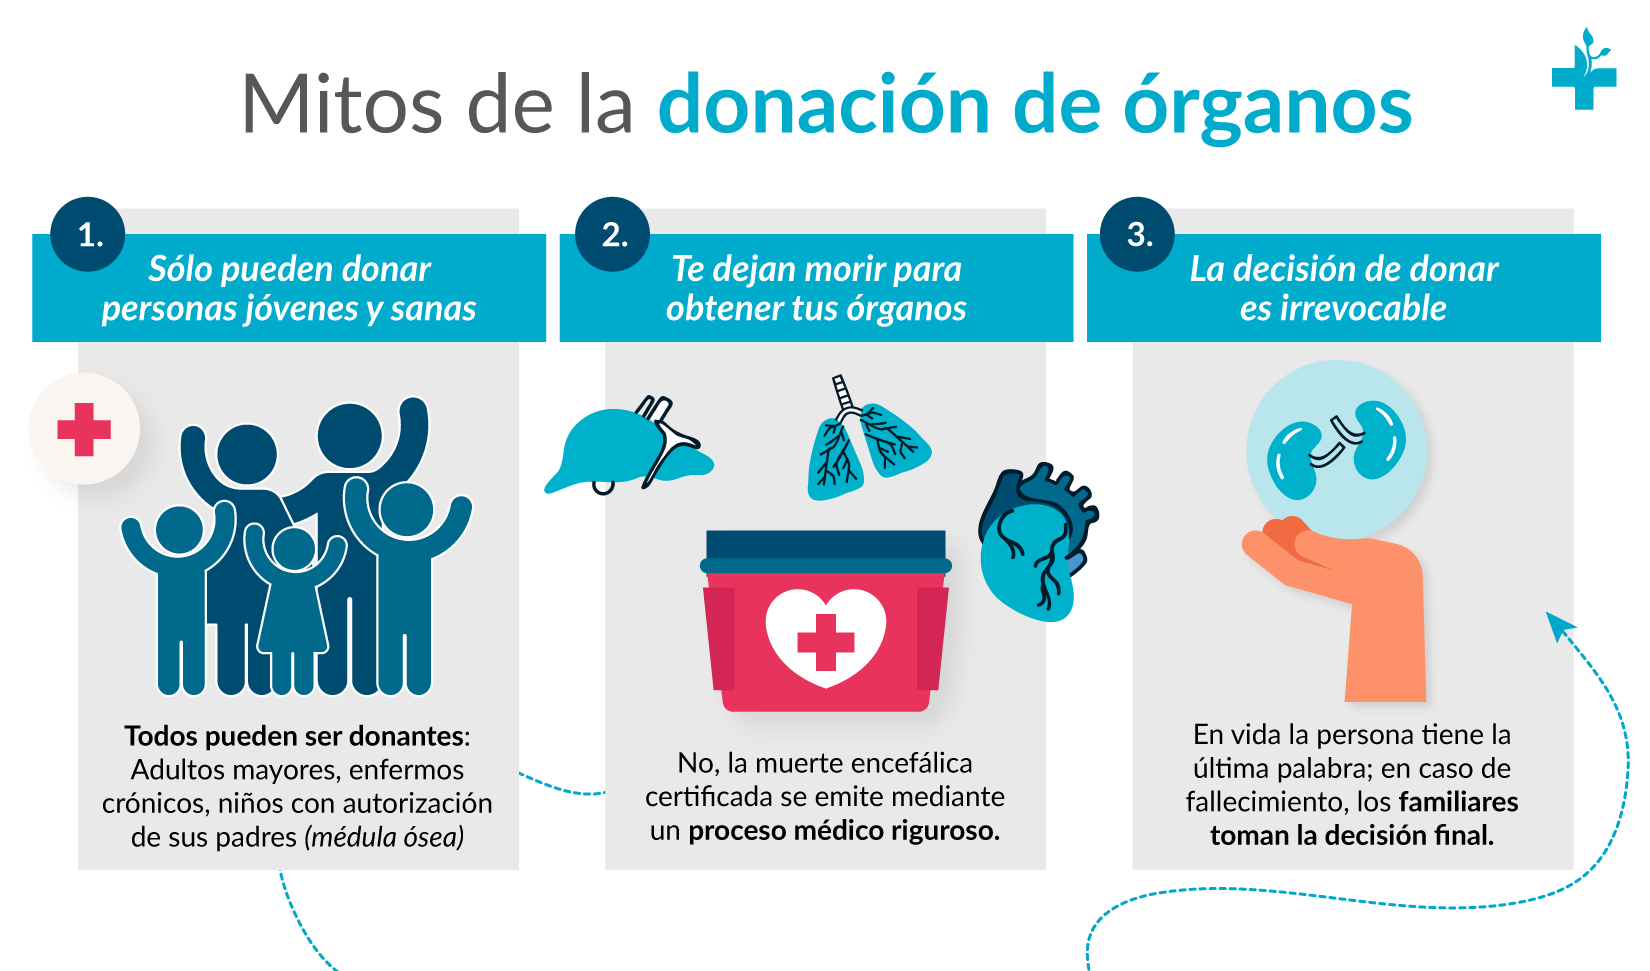 Mitos sobre la donación de órganos y tejidos